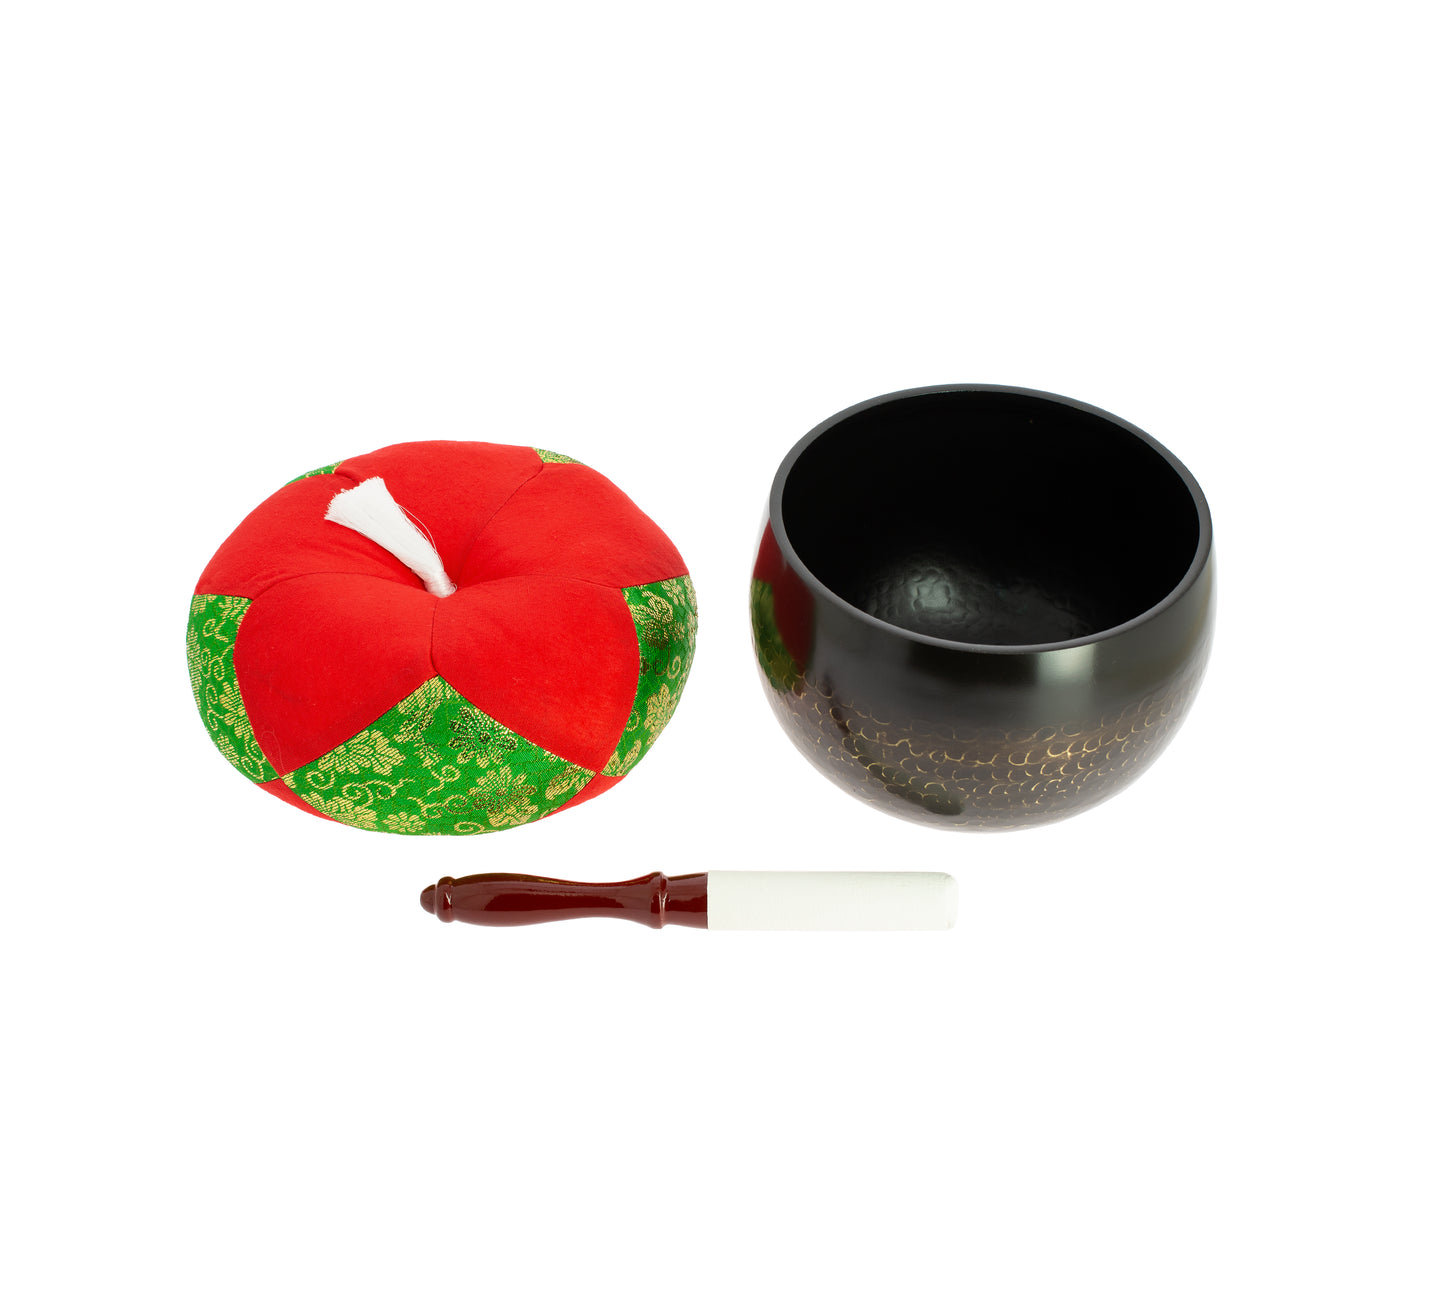 Zen Daitokuji Singing Bowl - 15 cm